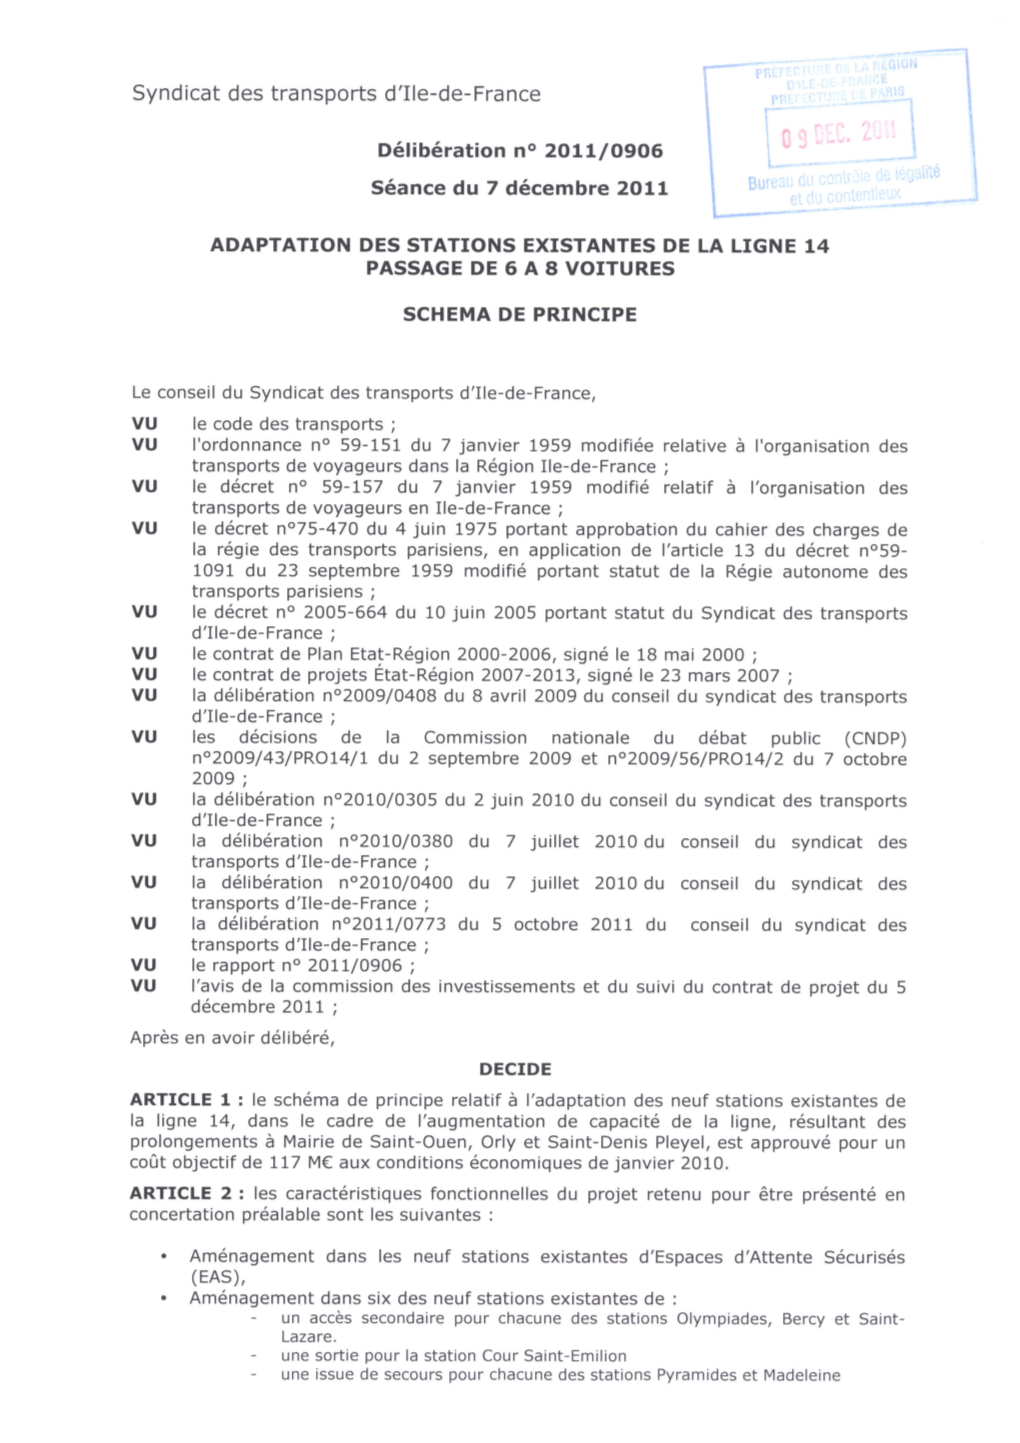 Adaptation Des Stations Existantes De La Ligne 2011 Passage De 6 À 8 Voitures Par Train